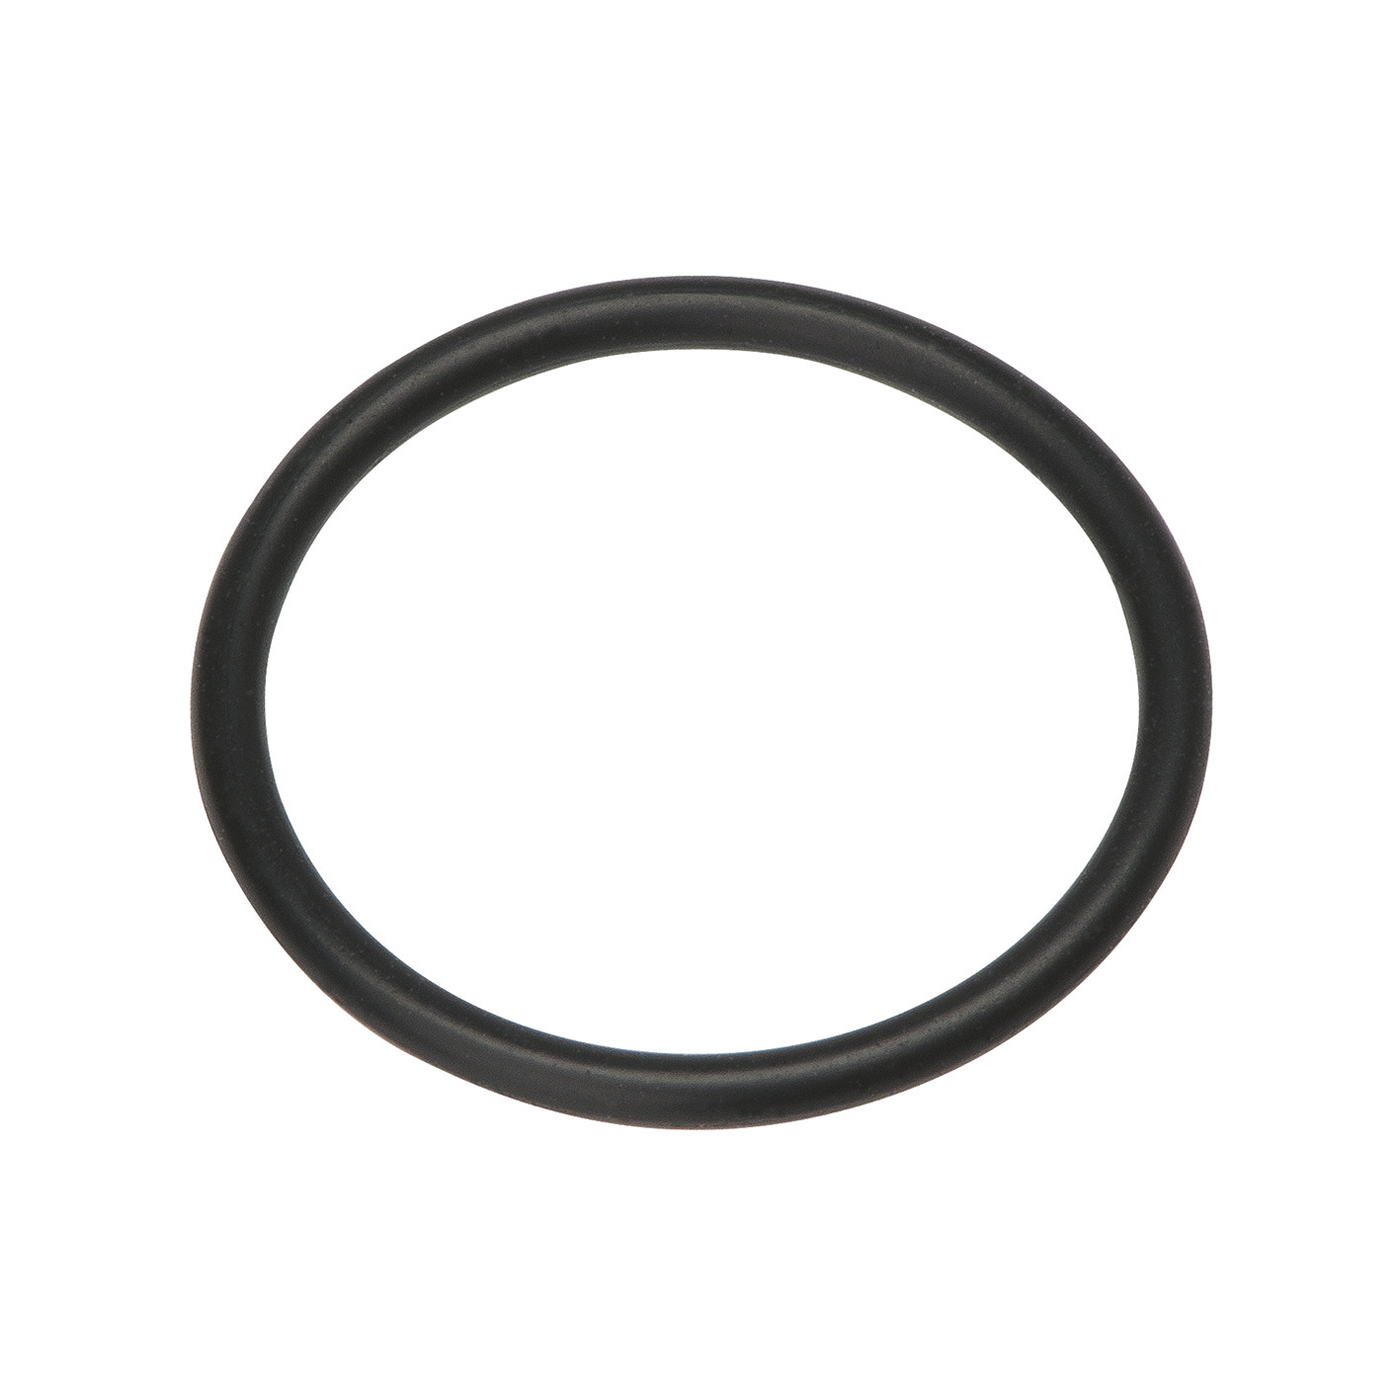 Lampert O-Ring, für Feinschweißdüse, für PUK - 1 Stück